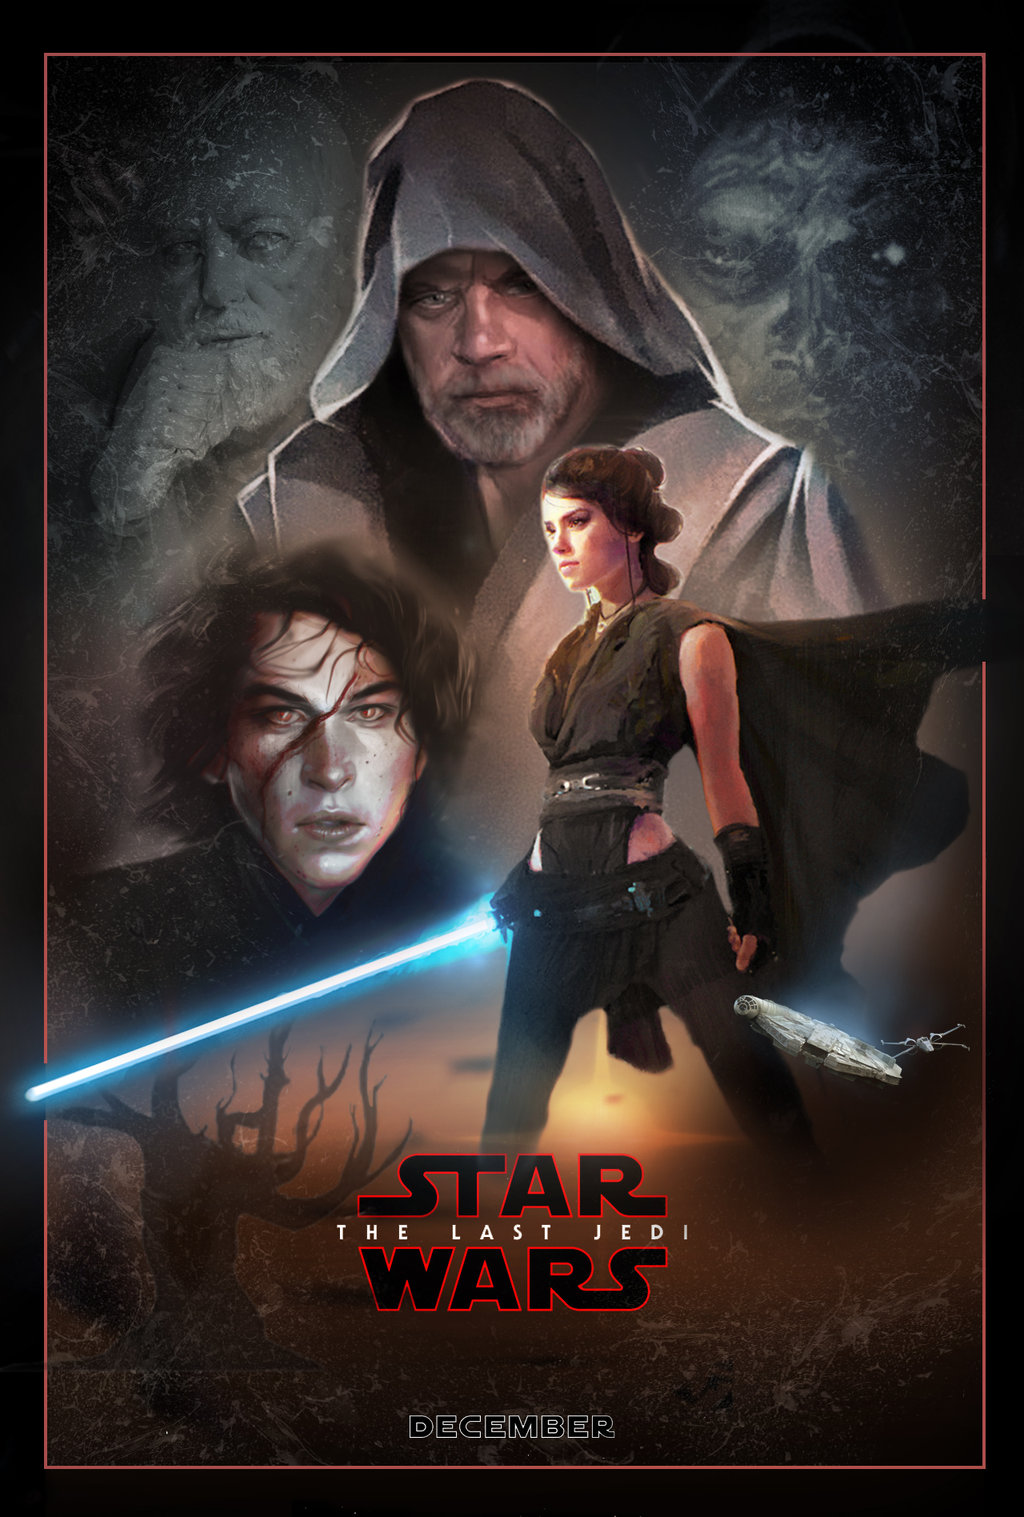 The Last Jedi Poster Wallpaper